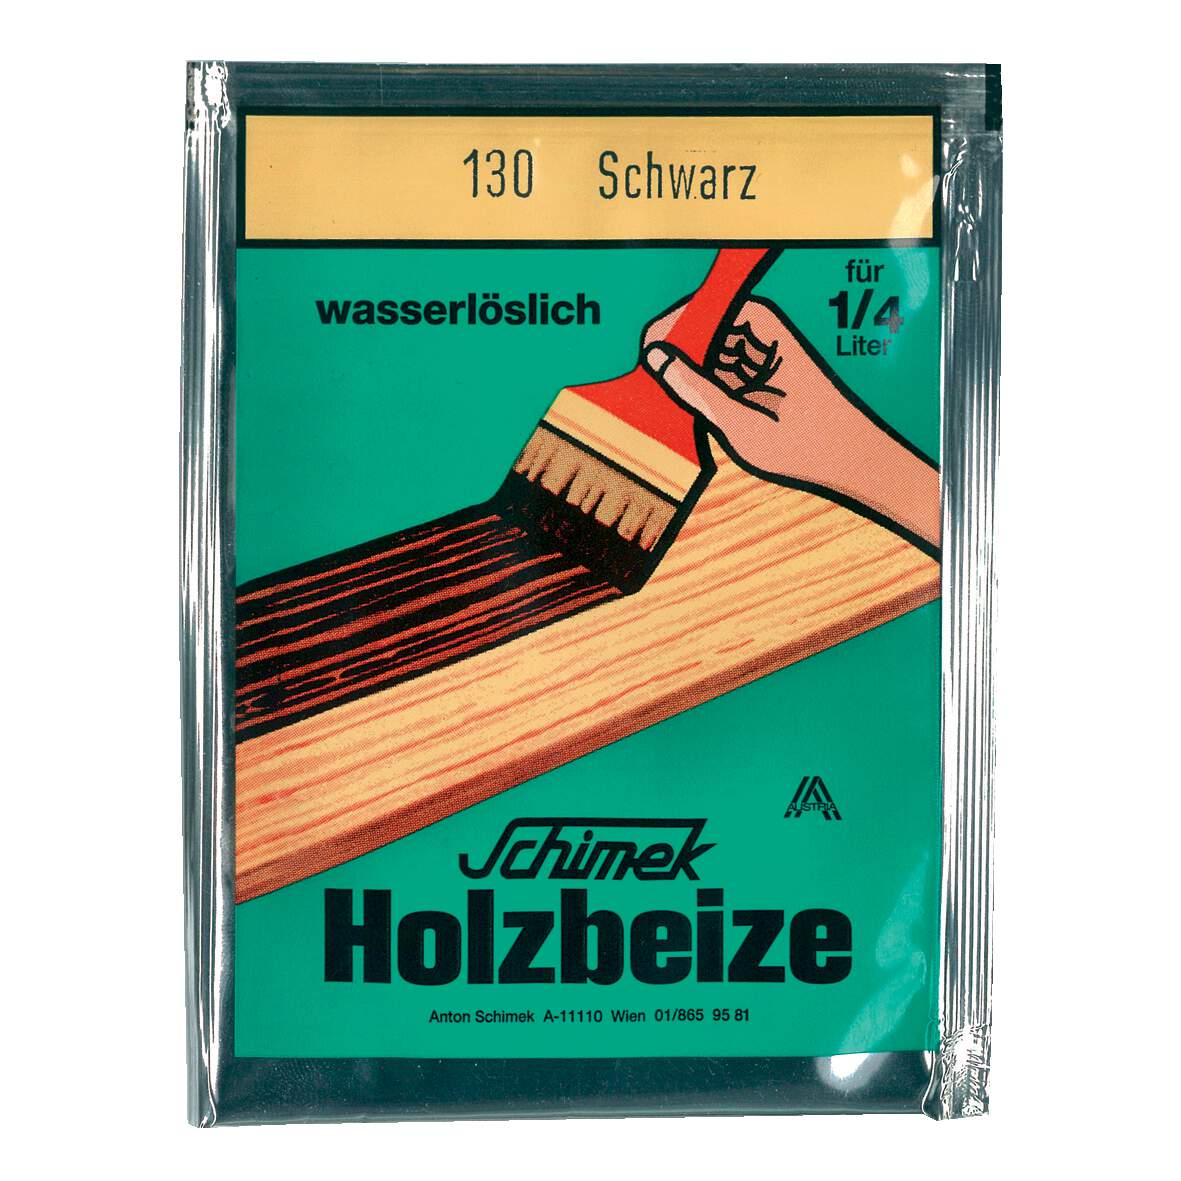 1216615 - Holzbeize wasserlöslich